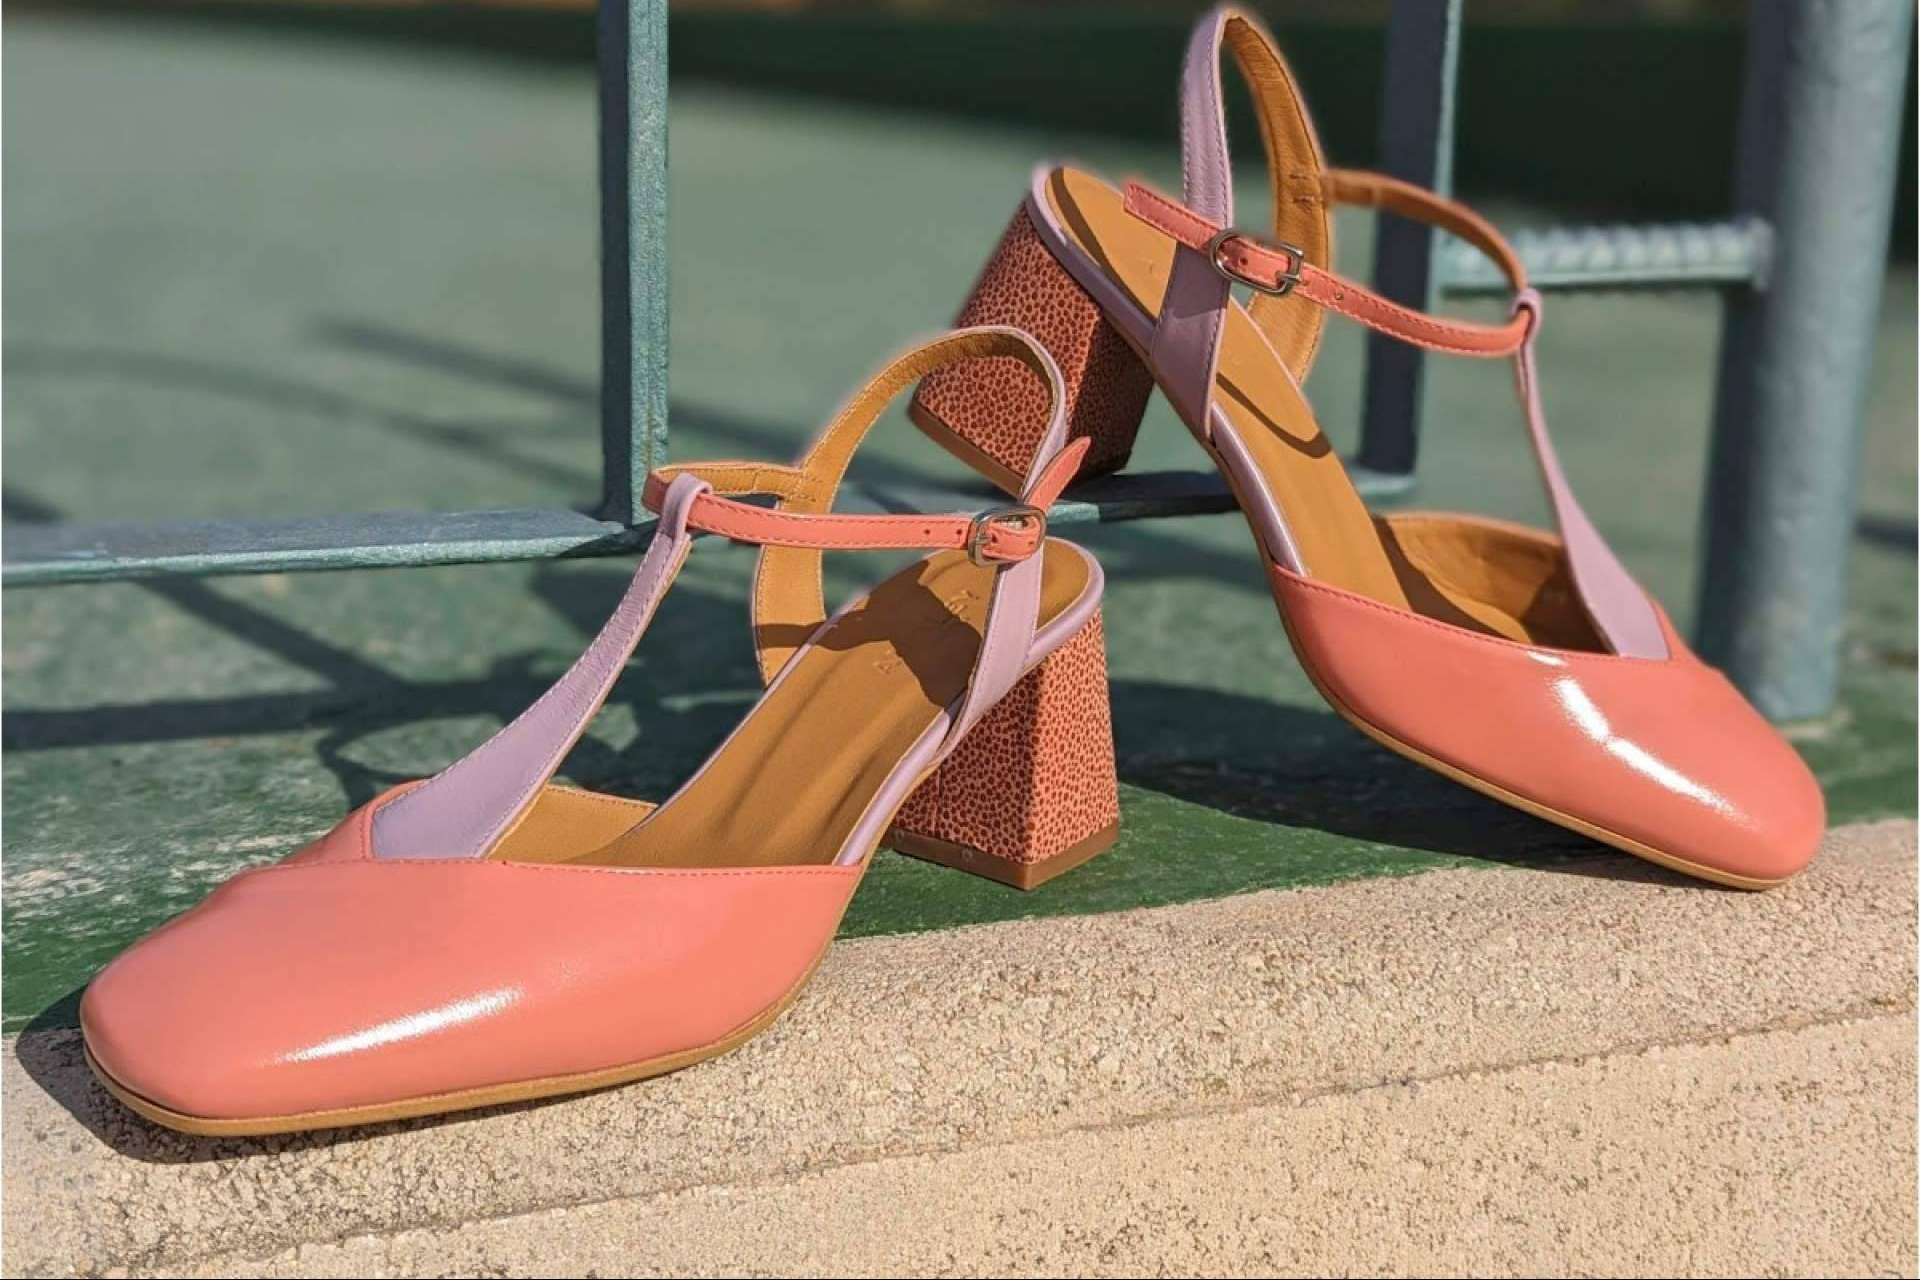  Audley Shoes ofrece una gran variedad de opciones de zapatos para lucir en el verano 